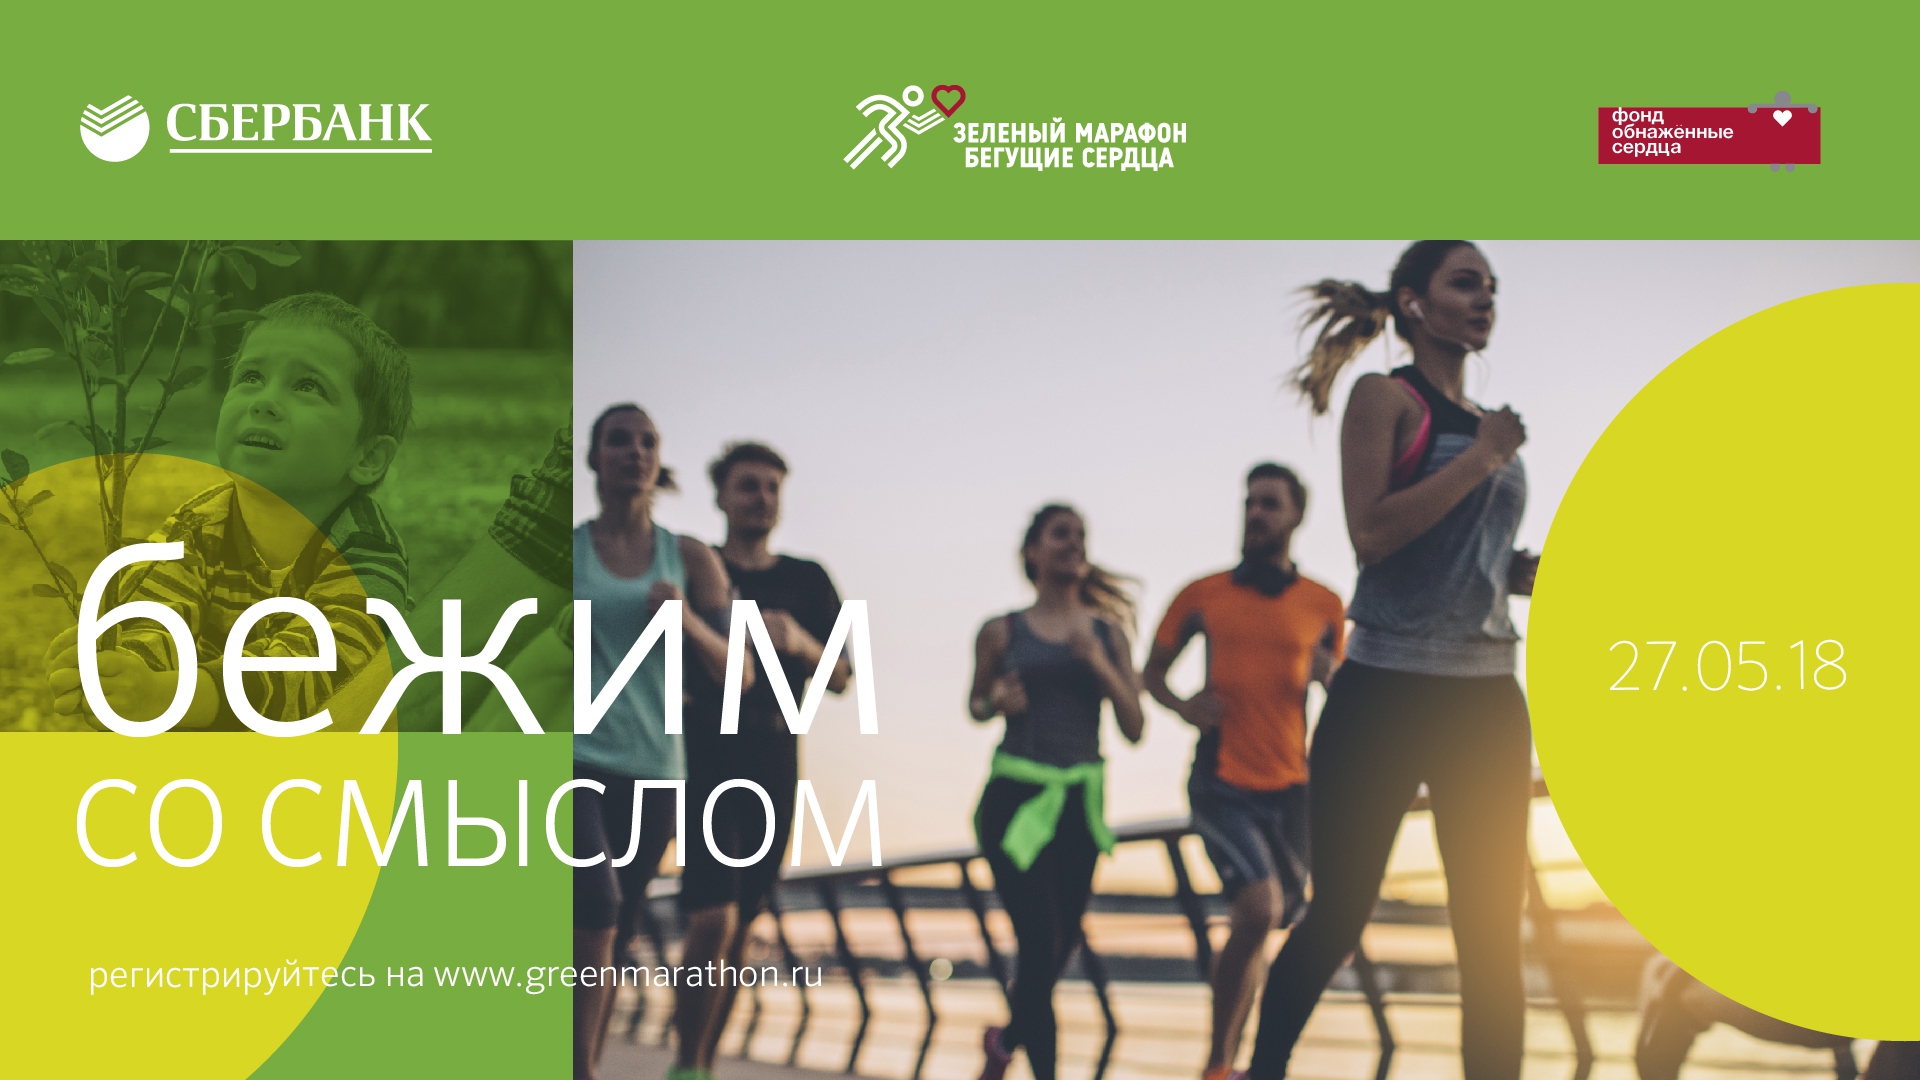 Ростов вновь примет ежегодный «Зелёный марафон» Сбербанка